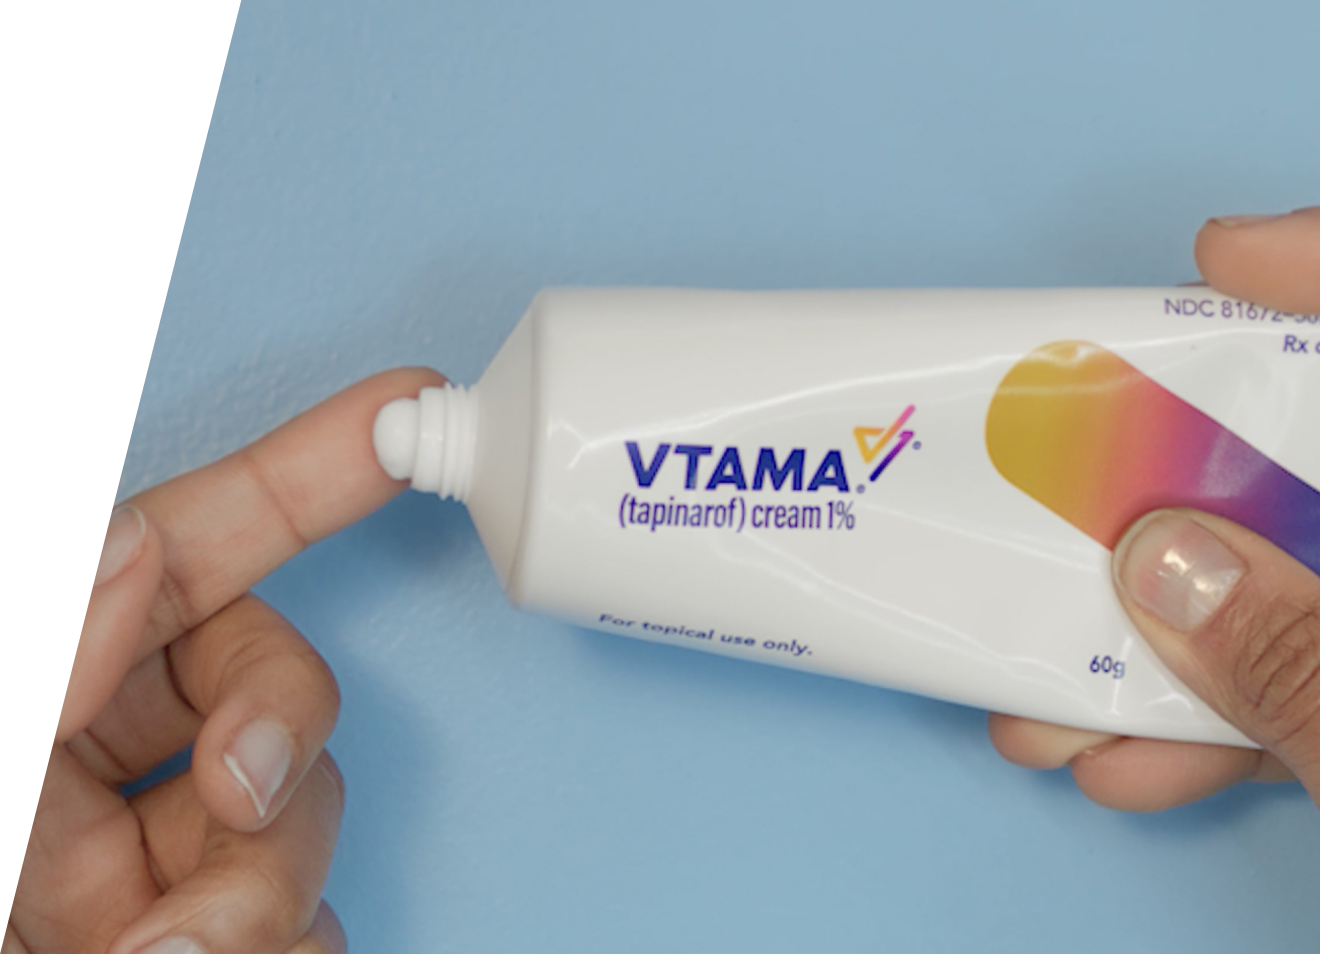 Hands squeezing VTAMA cream tube